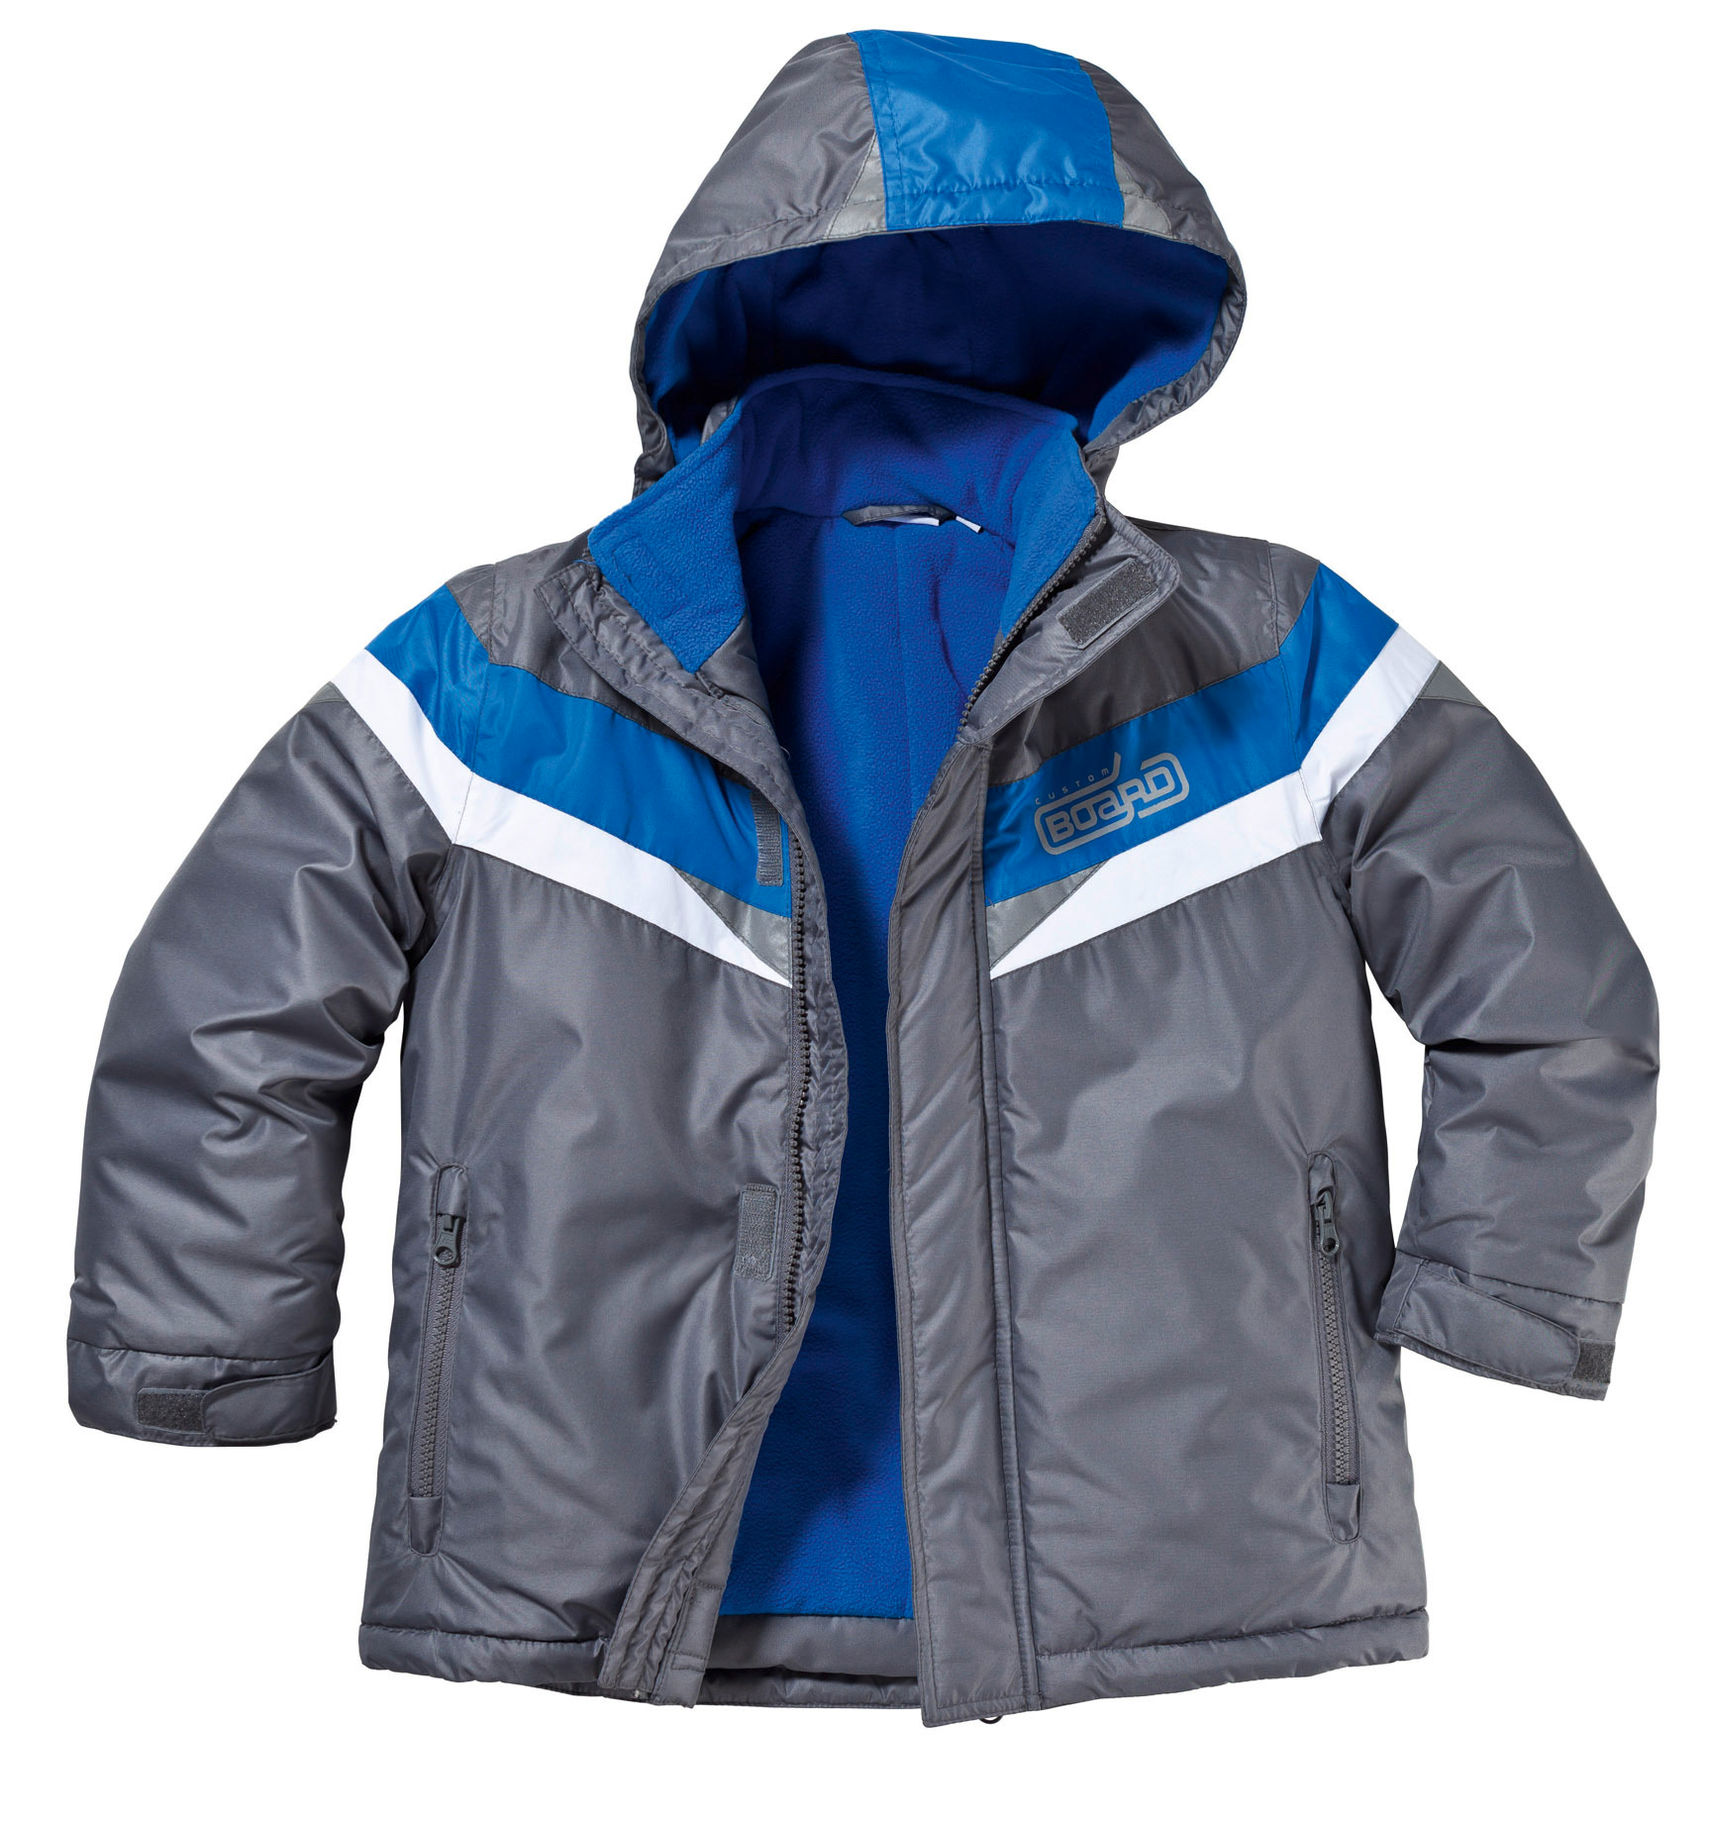 Ski-Jacke für Jungen, anthrazit-blau Größe: 98 104 | Weltbild.de